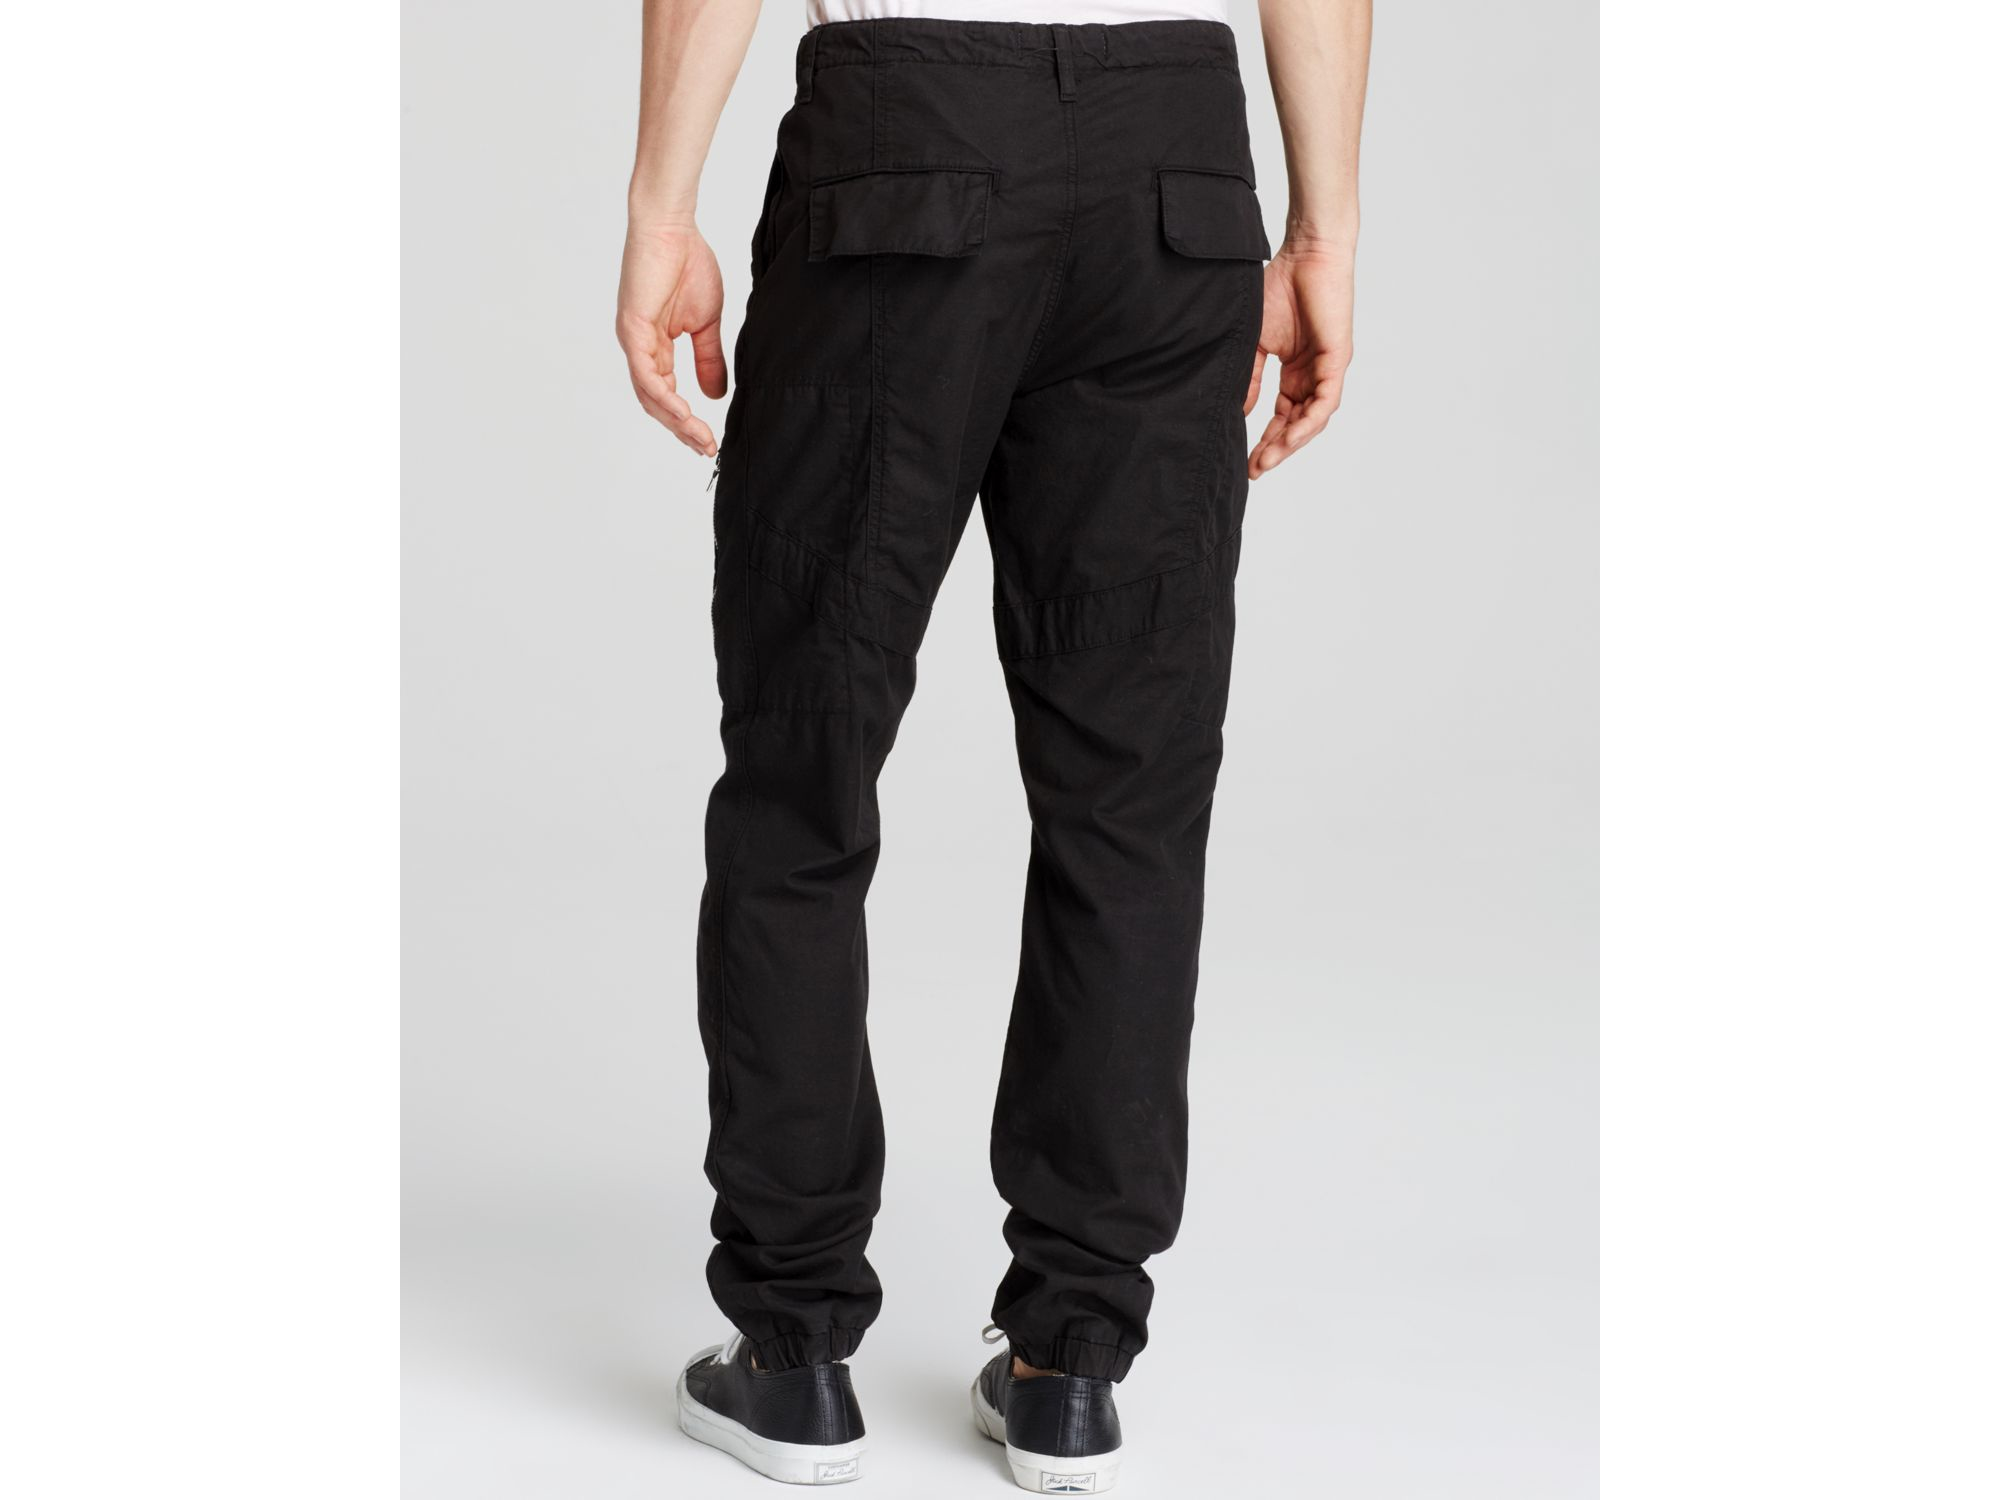 J Brand Frye Cotton Flight Pants in Black for Men - Lyst